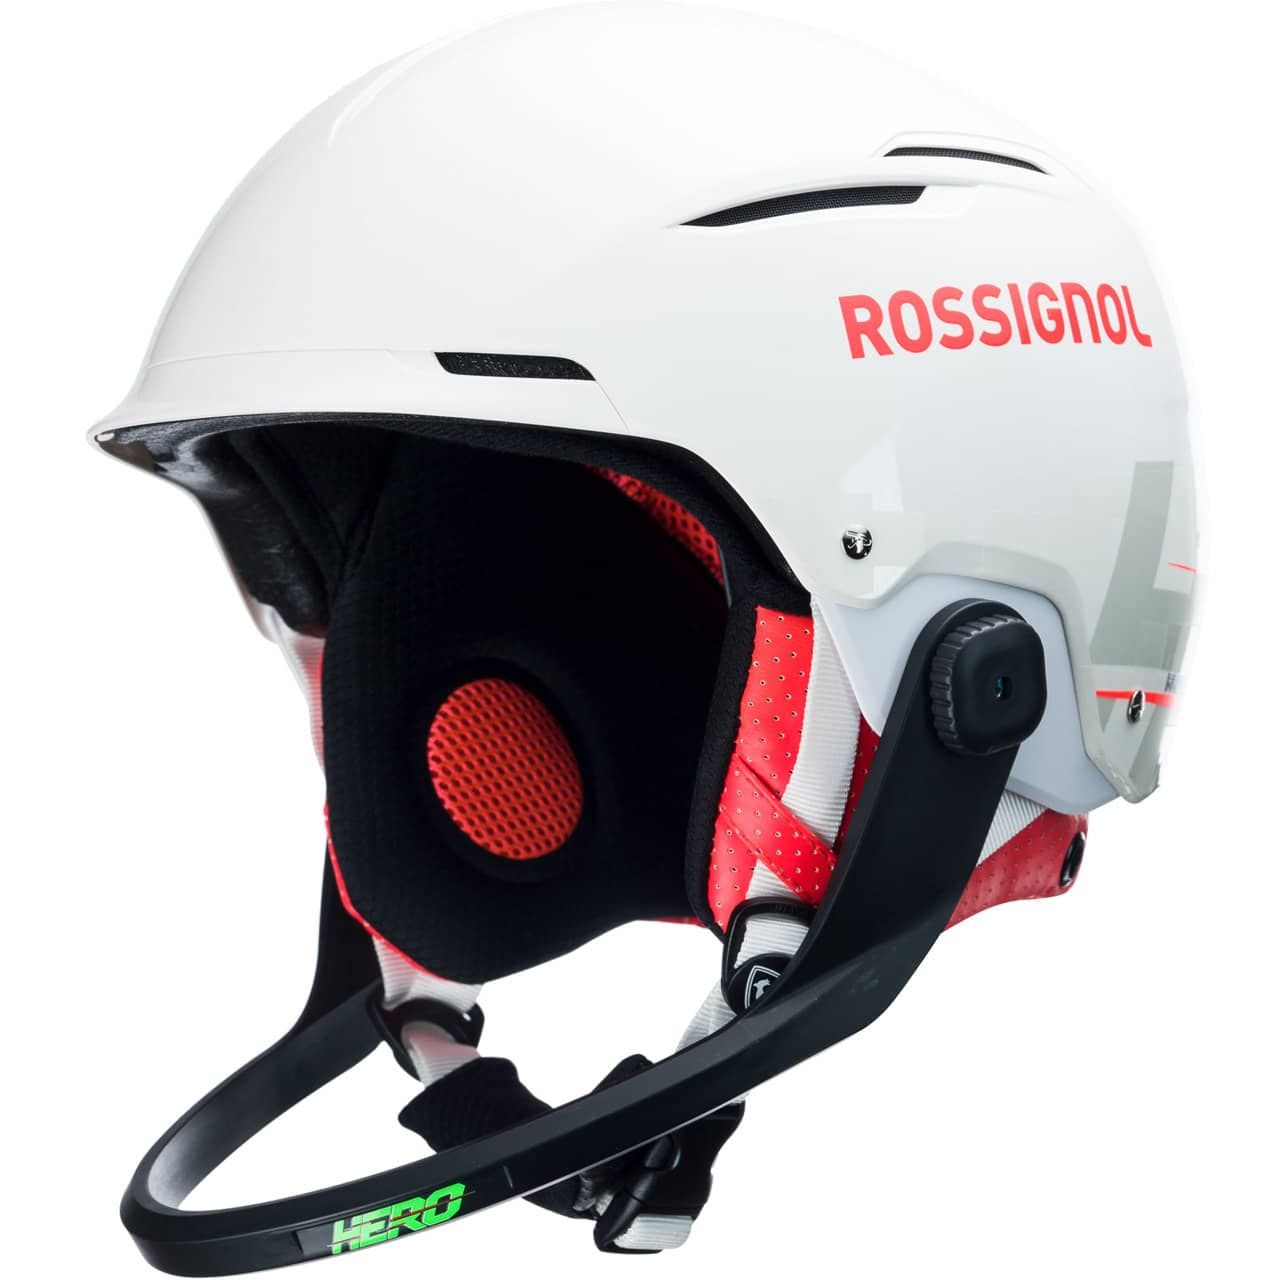 Rossignol Hero Slalom Impacts white with Chinguard von Rossignol